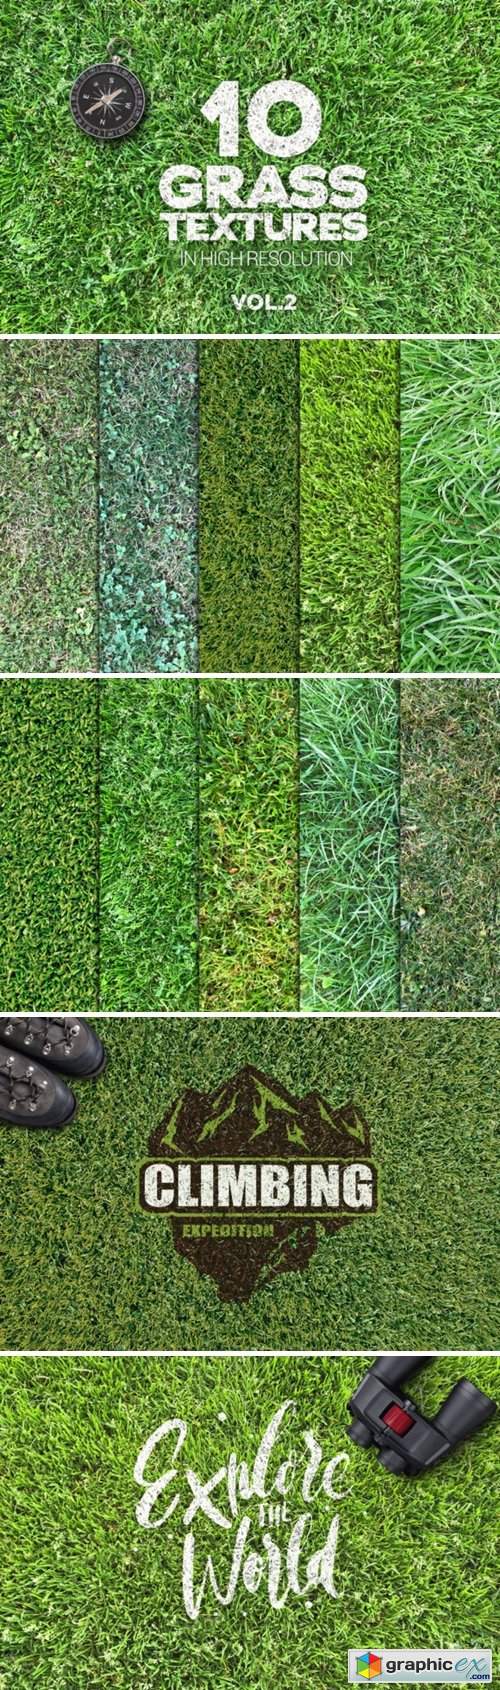 Grass Textures Vol2 X10